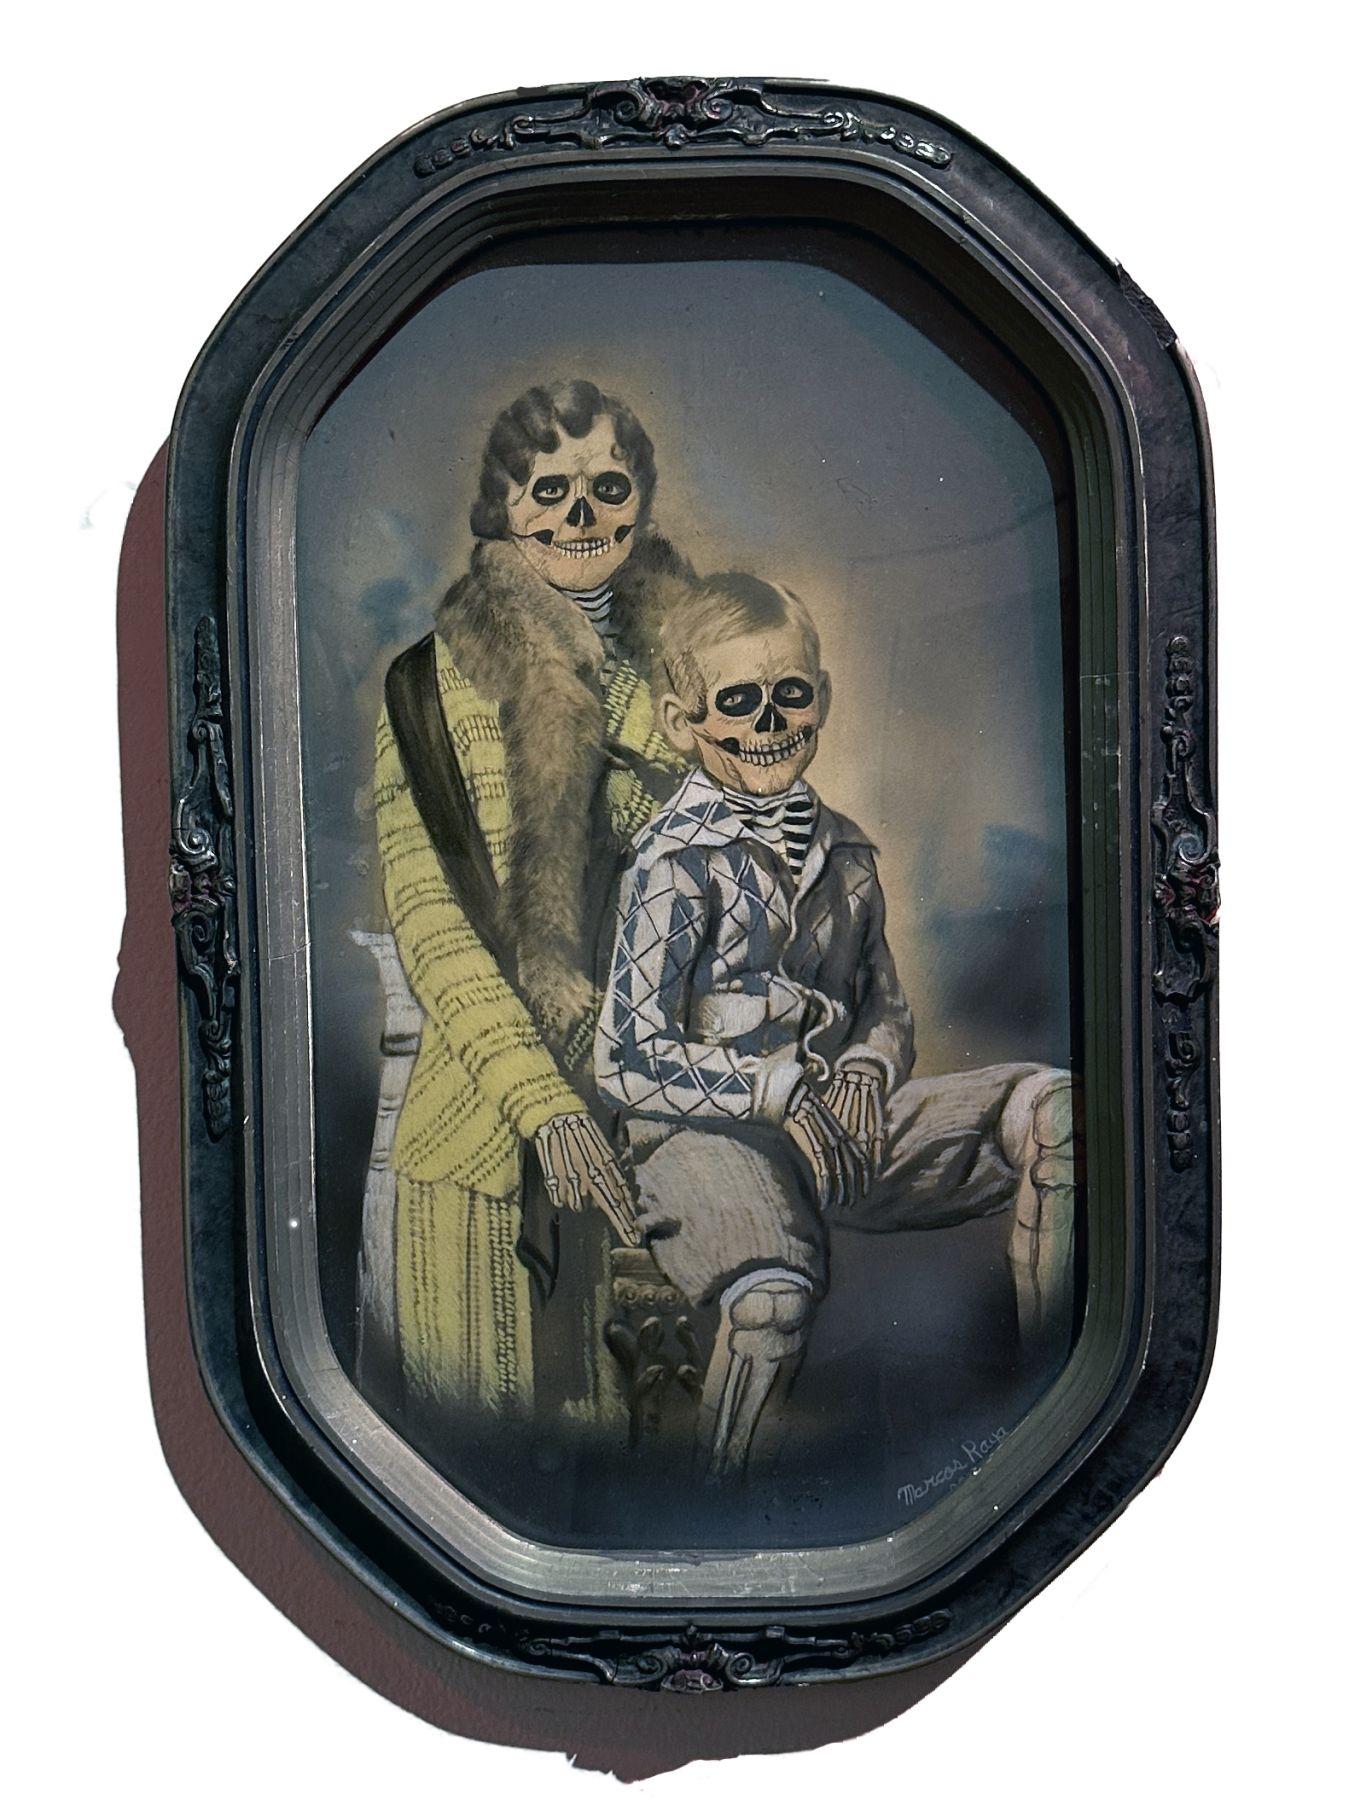 Mère et enfant - Photo ancienne peinte dans un cadre - Mixed Media Art de Marcos Raya